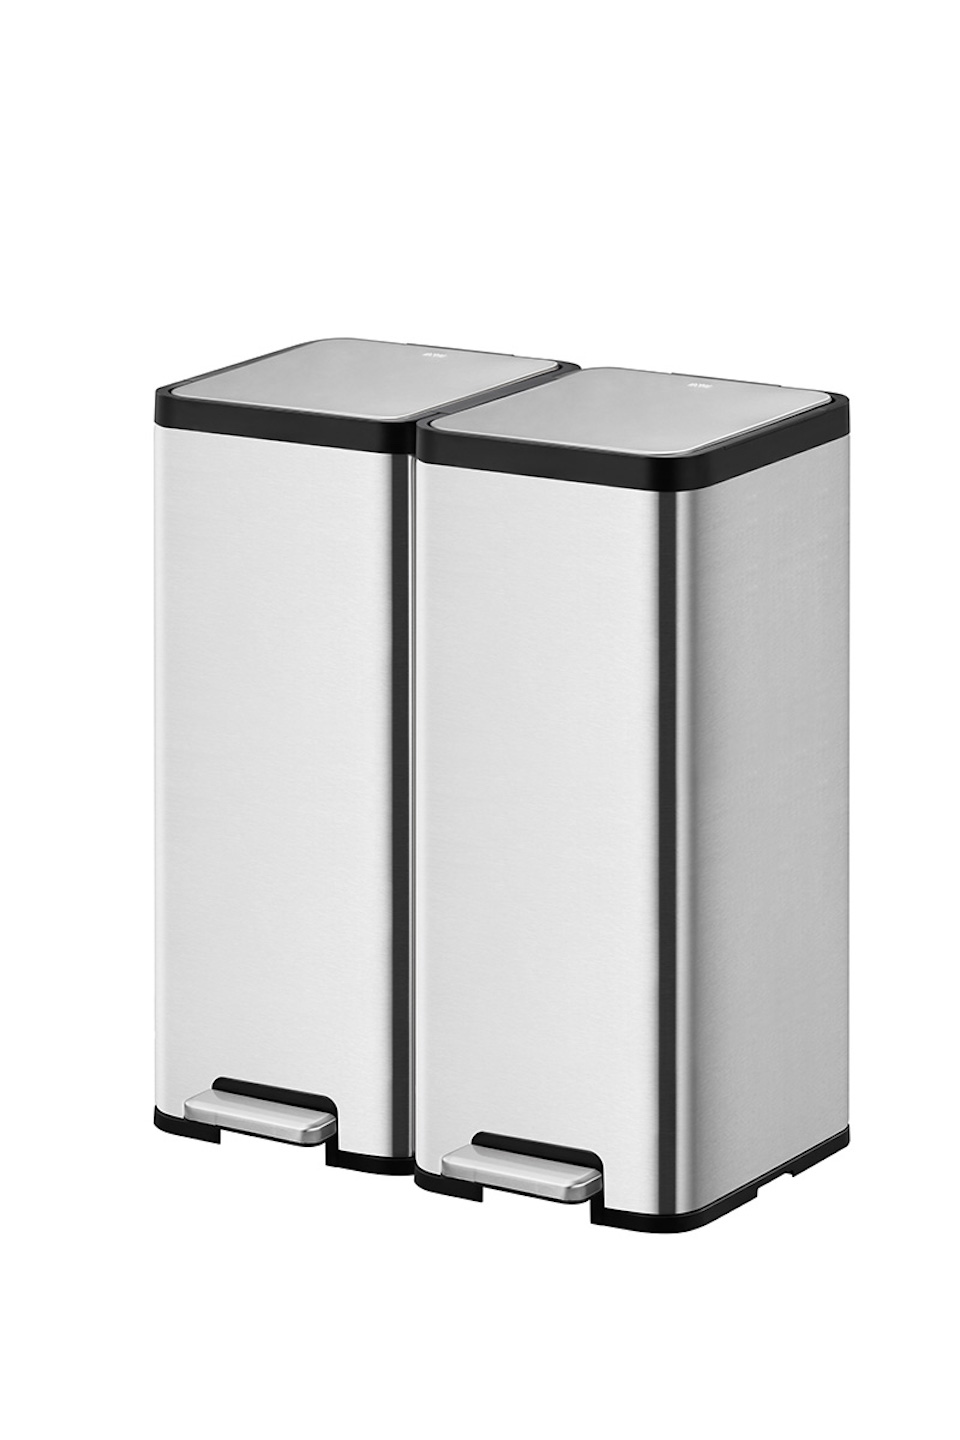 Kompakter und funktionaler Treteimer aus mattgrauem Edelstahl | 30 Liter, HxBxT 66,5x32,1x37,3cm | Silber